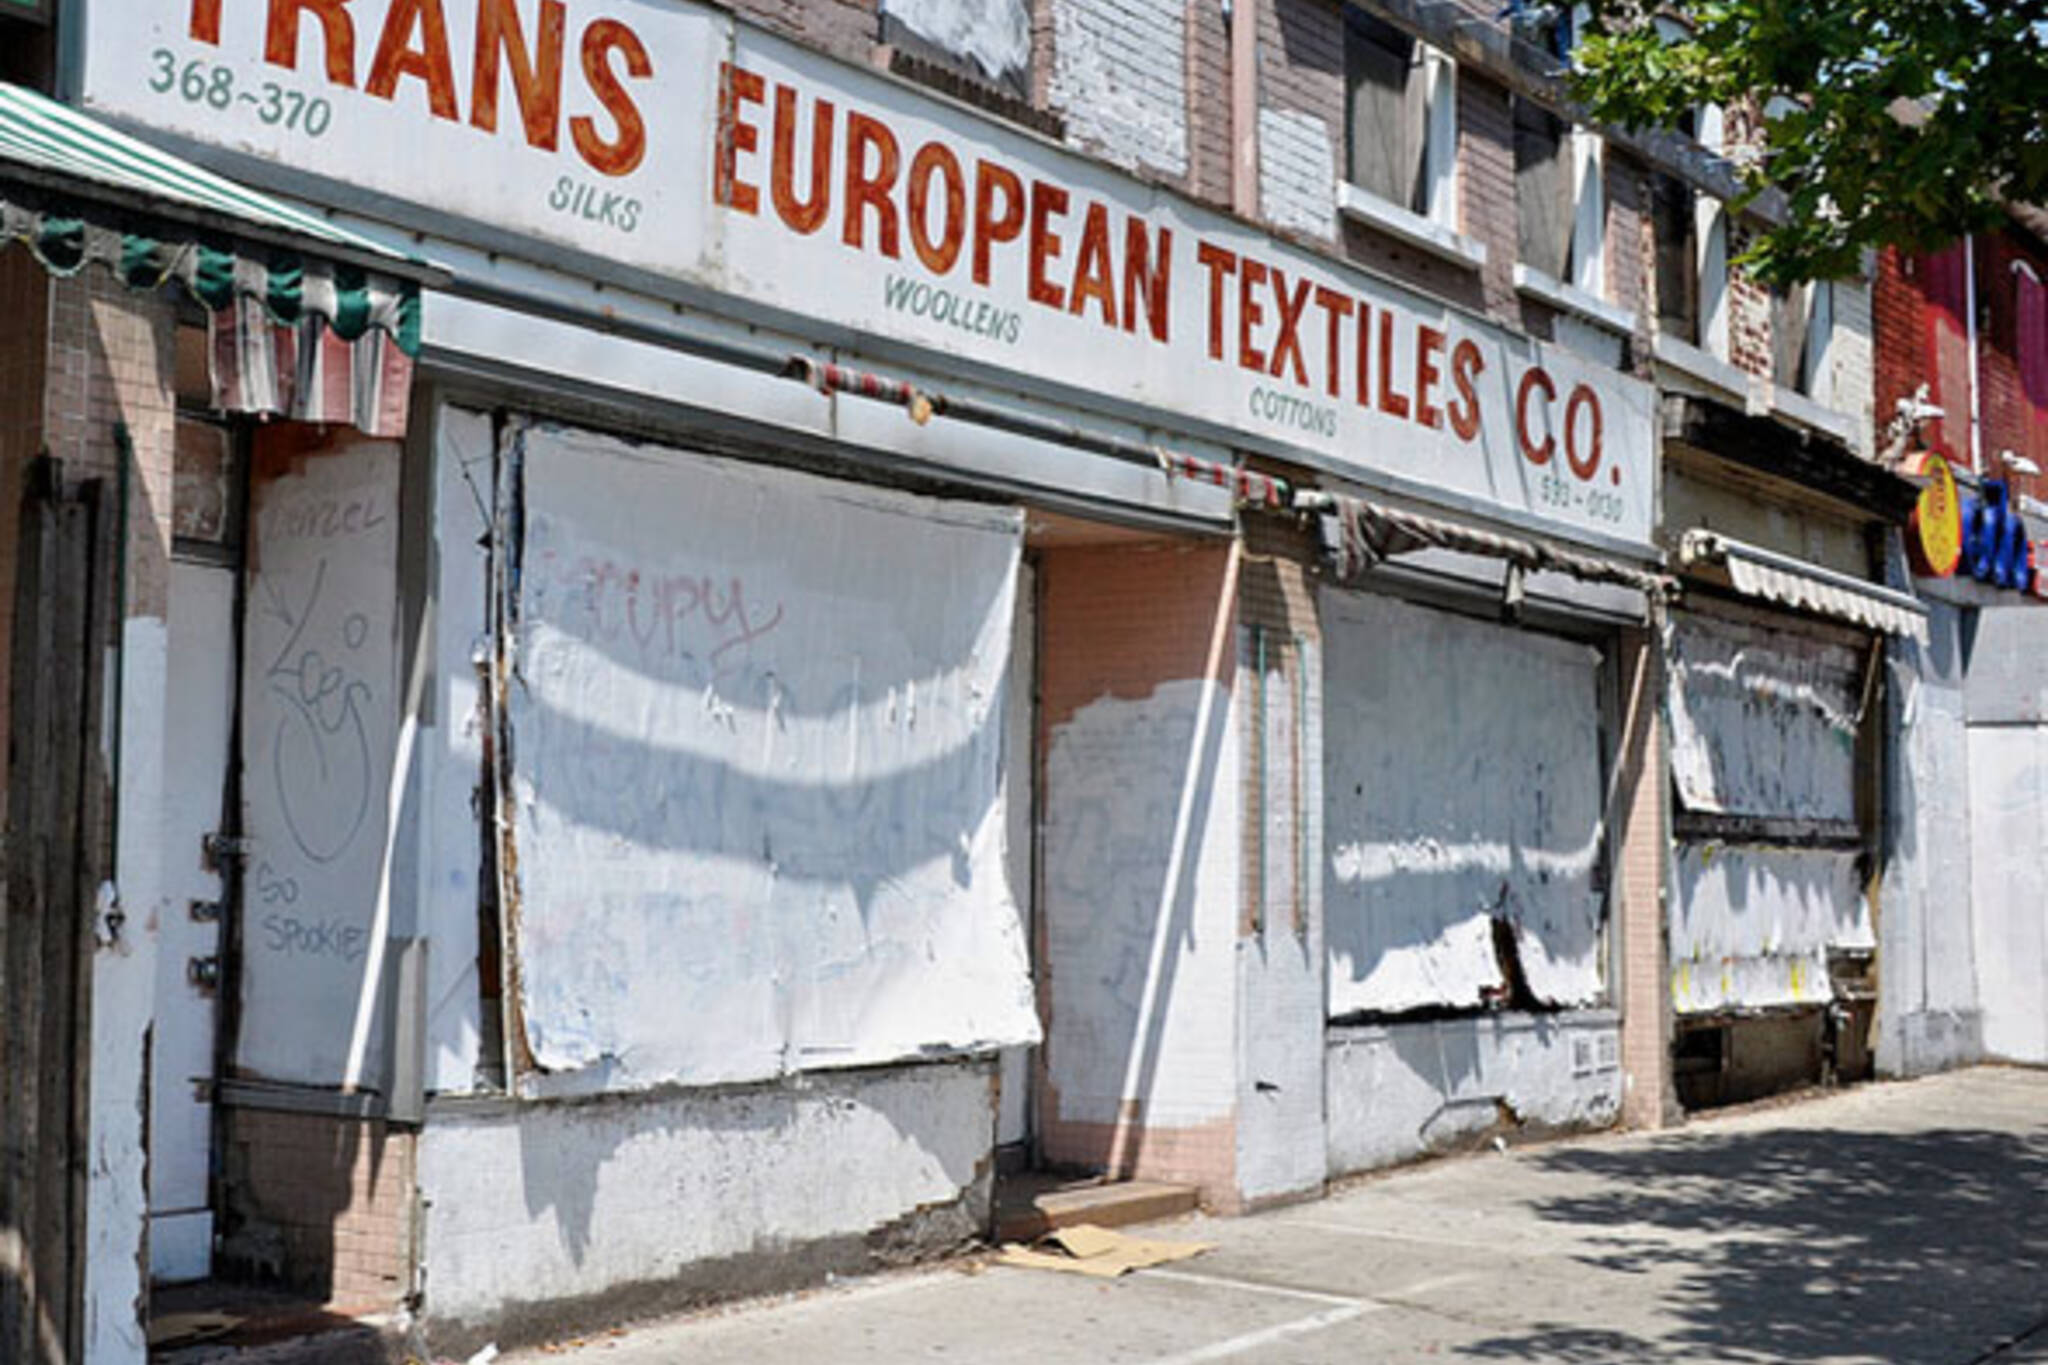 toronto spadina avenue trans european textiles